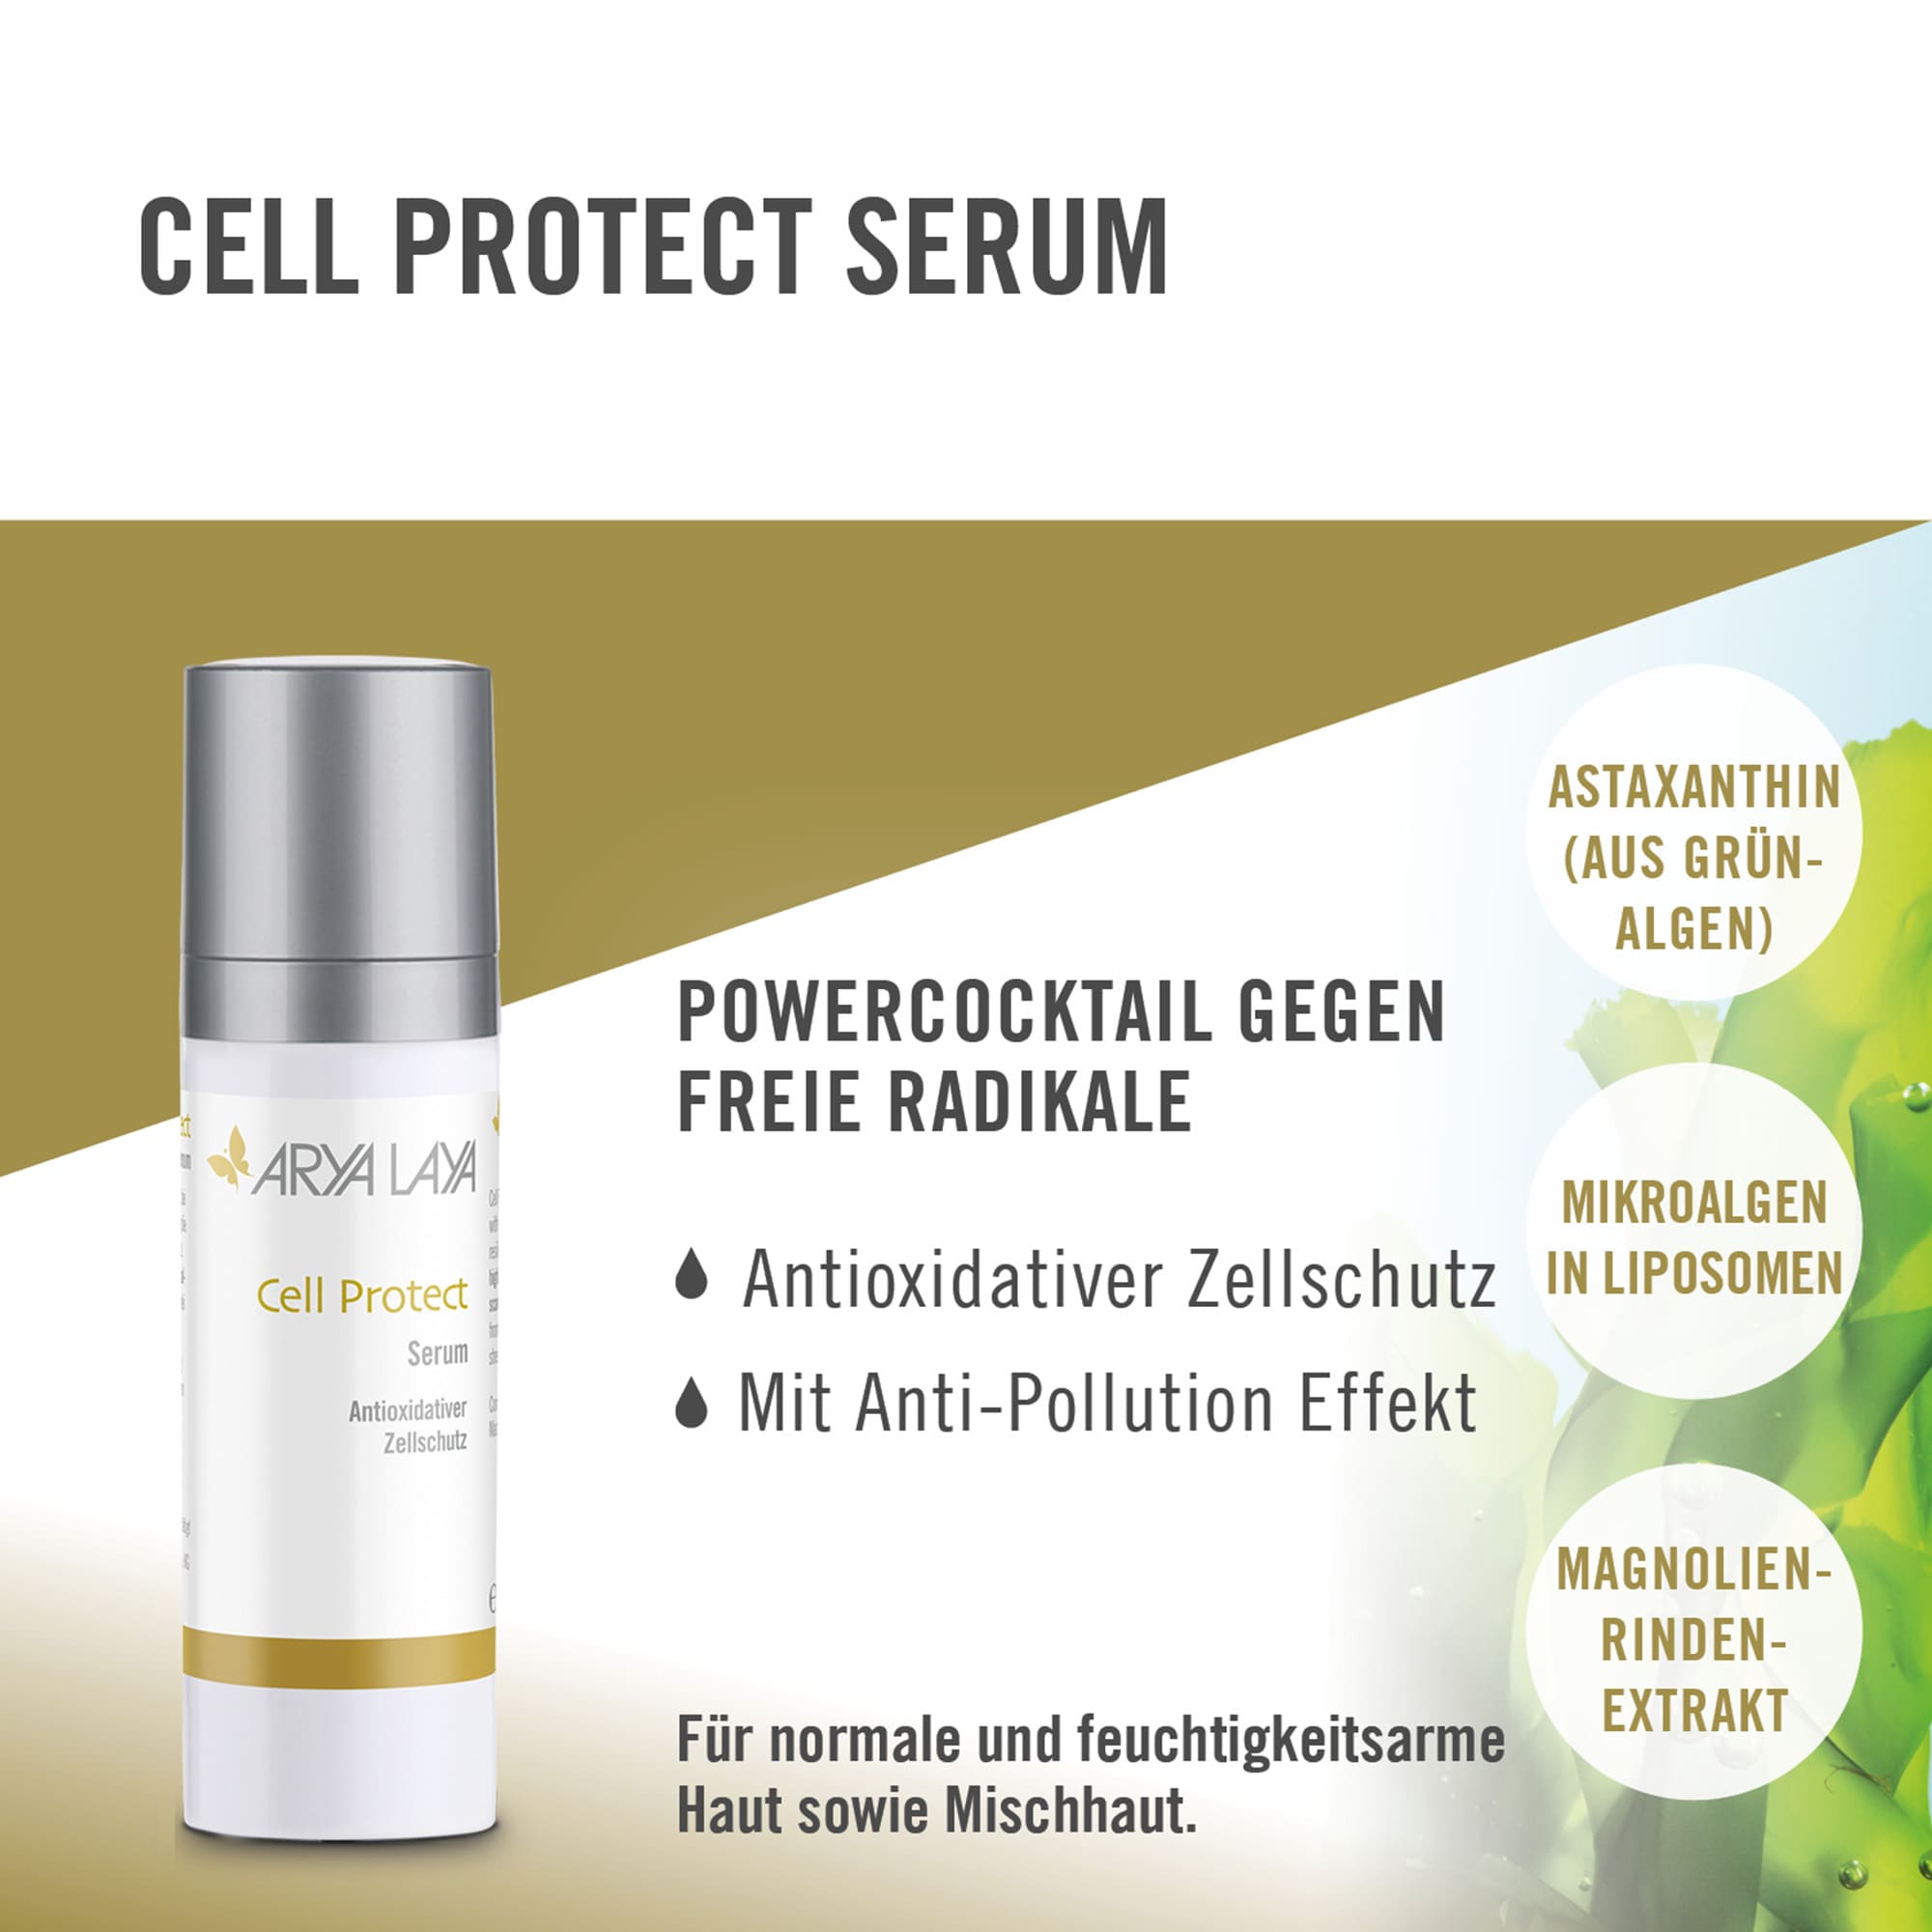 Wirkweise Cell Protect Serum mit Anti-Pollution-Effekt, antioxidativer Zellschutz, neutralisiert freie Radikale, bei Sonnenempfindlichkeit